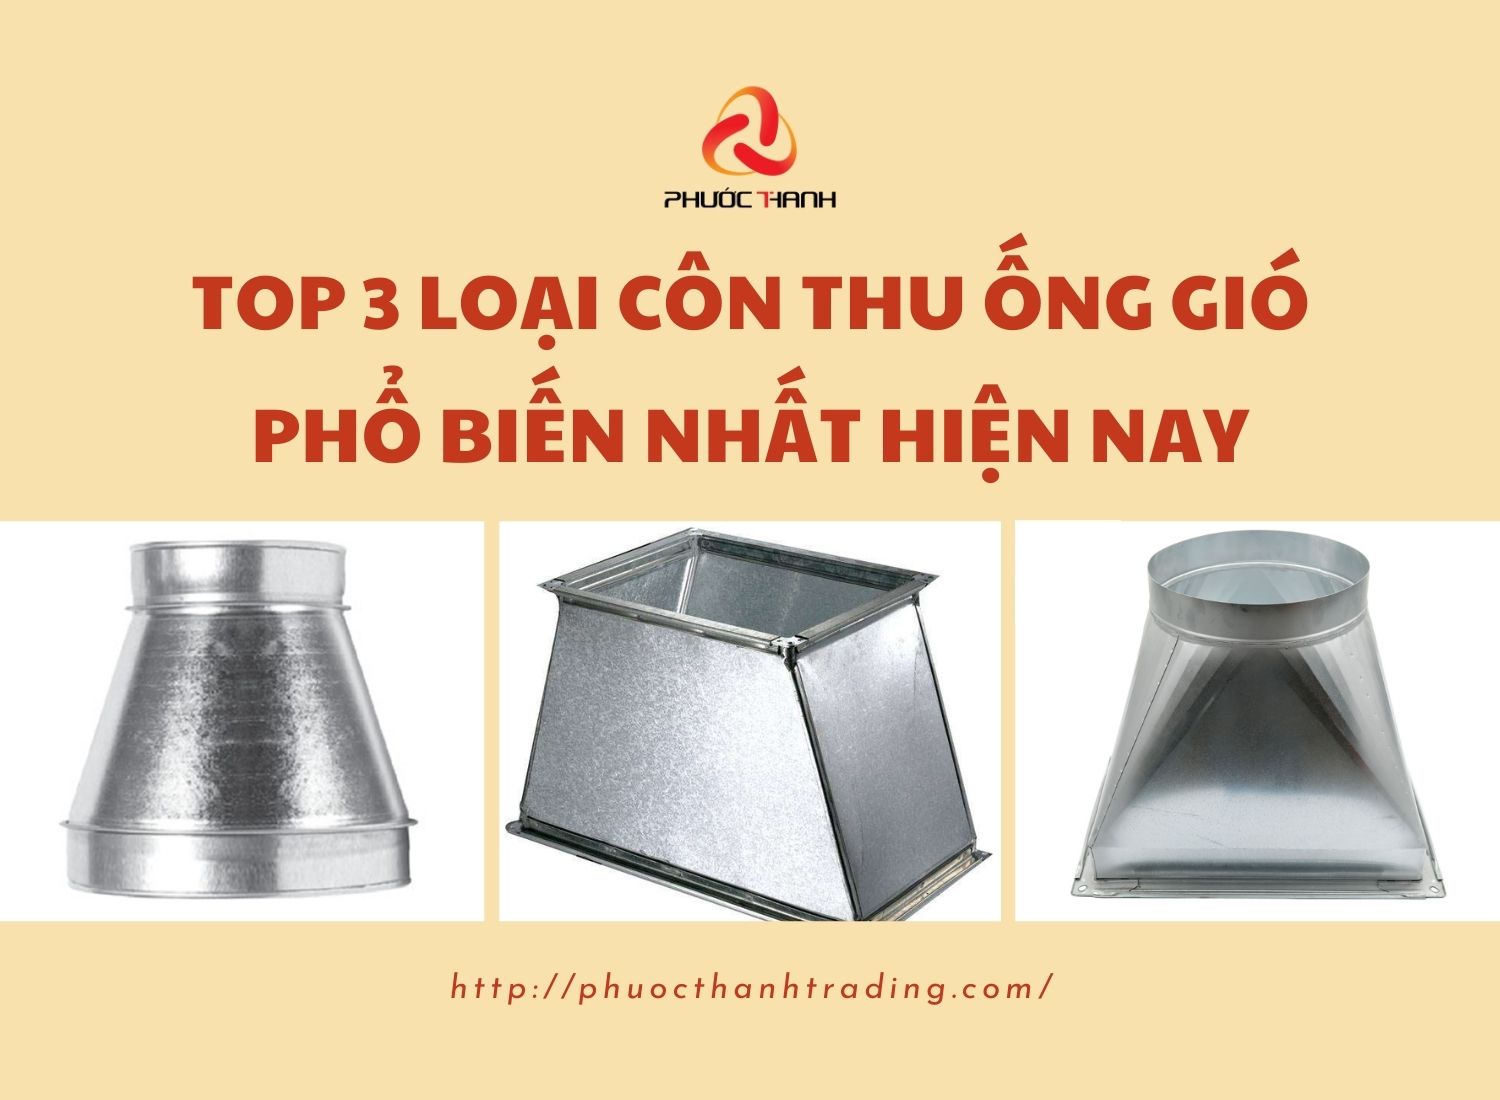 Con-thu-ong-gio-Phuoc-Thanh-140422